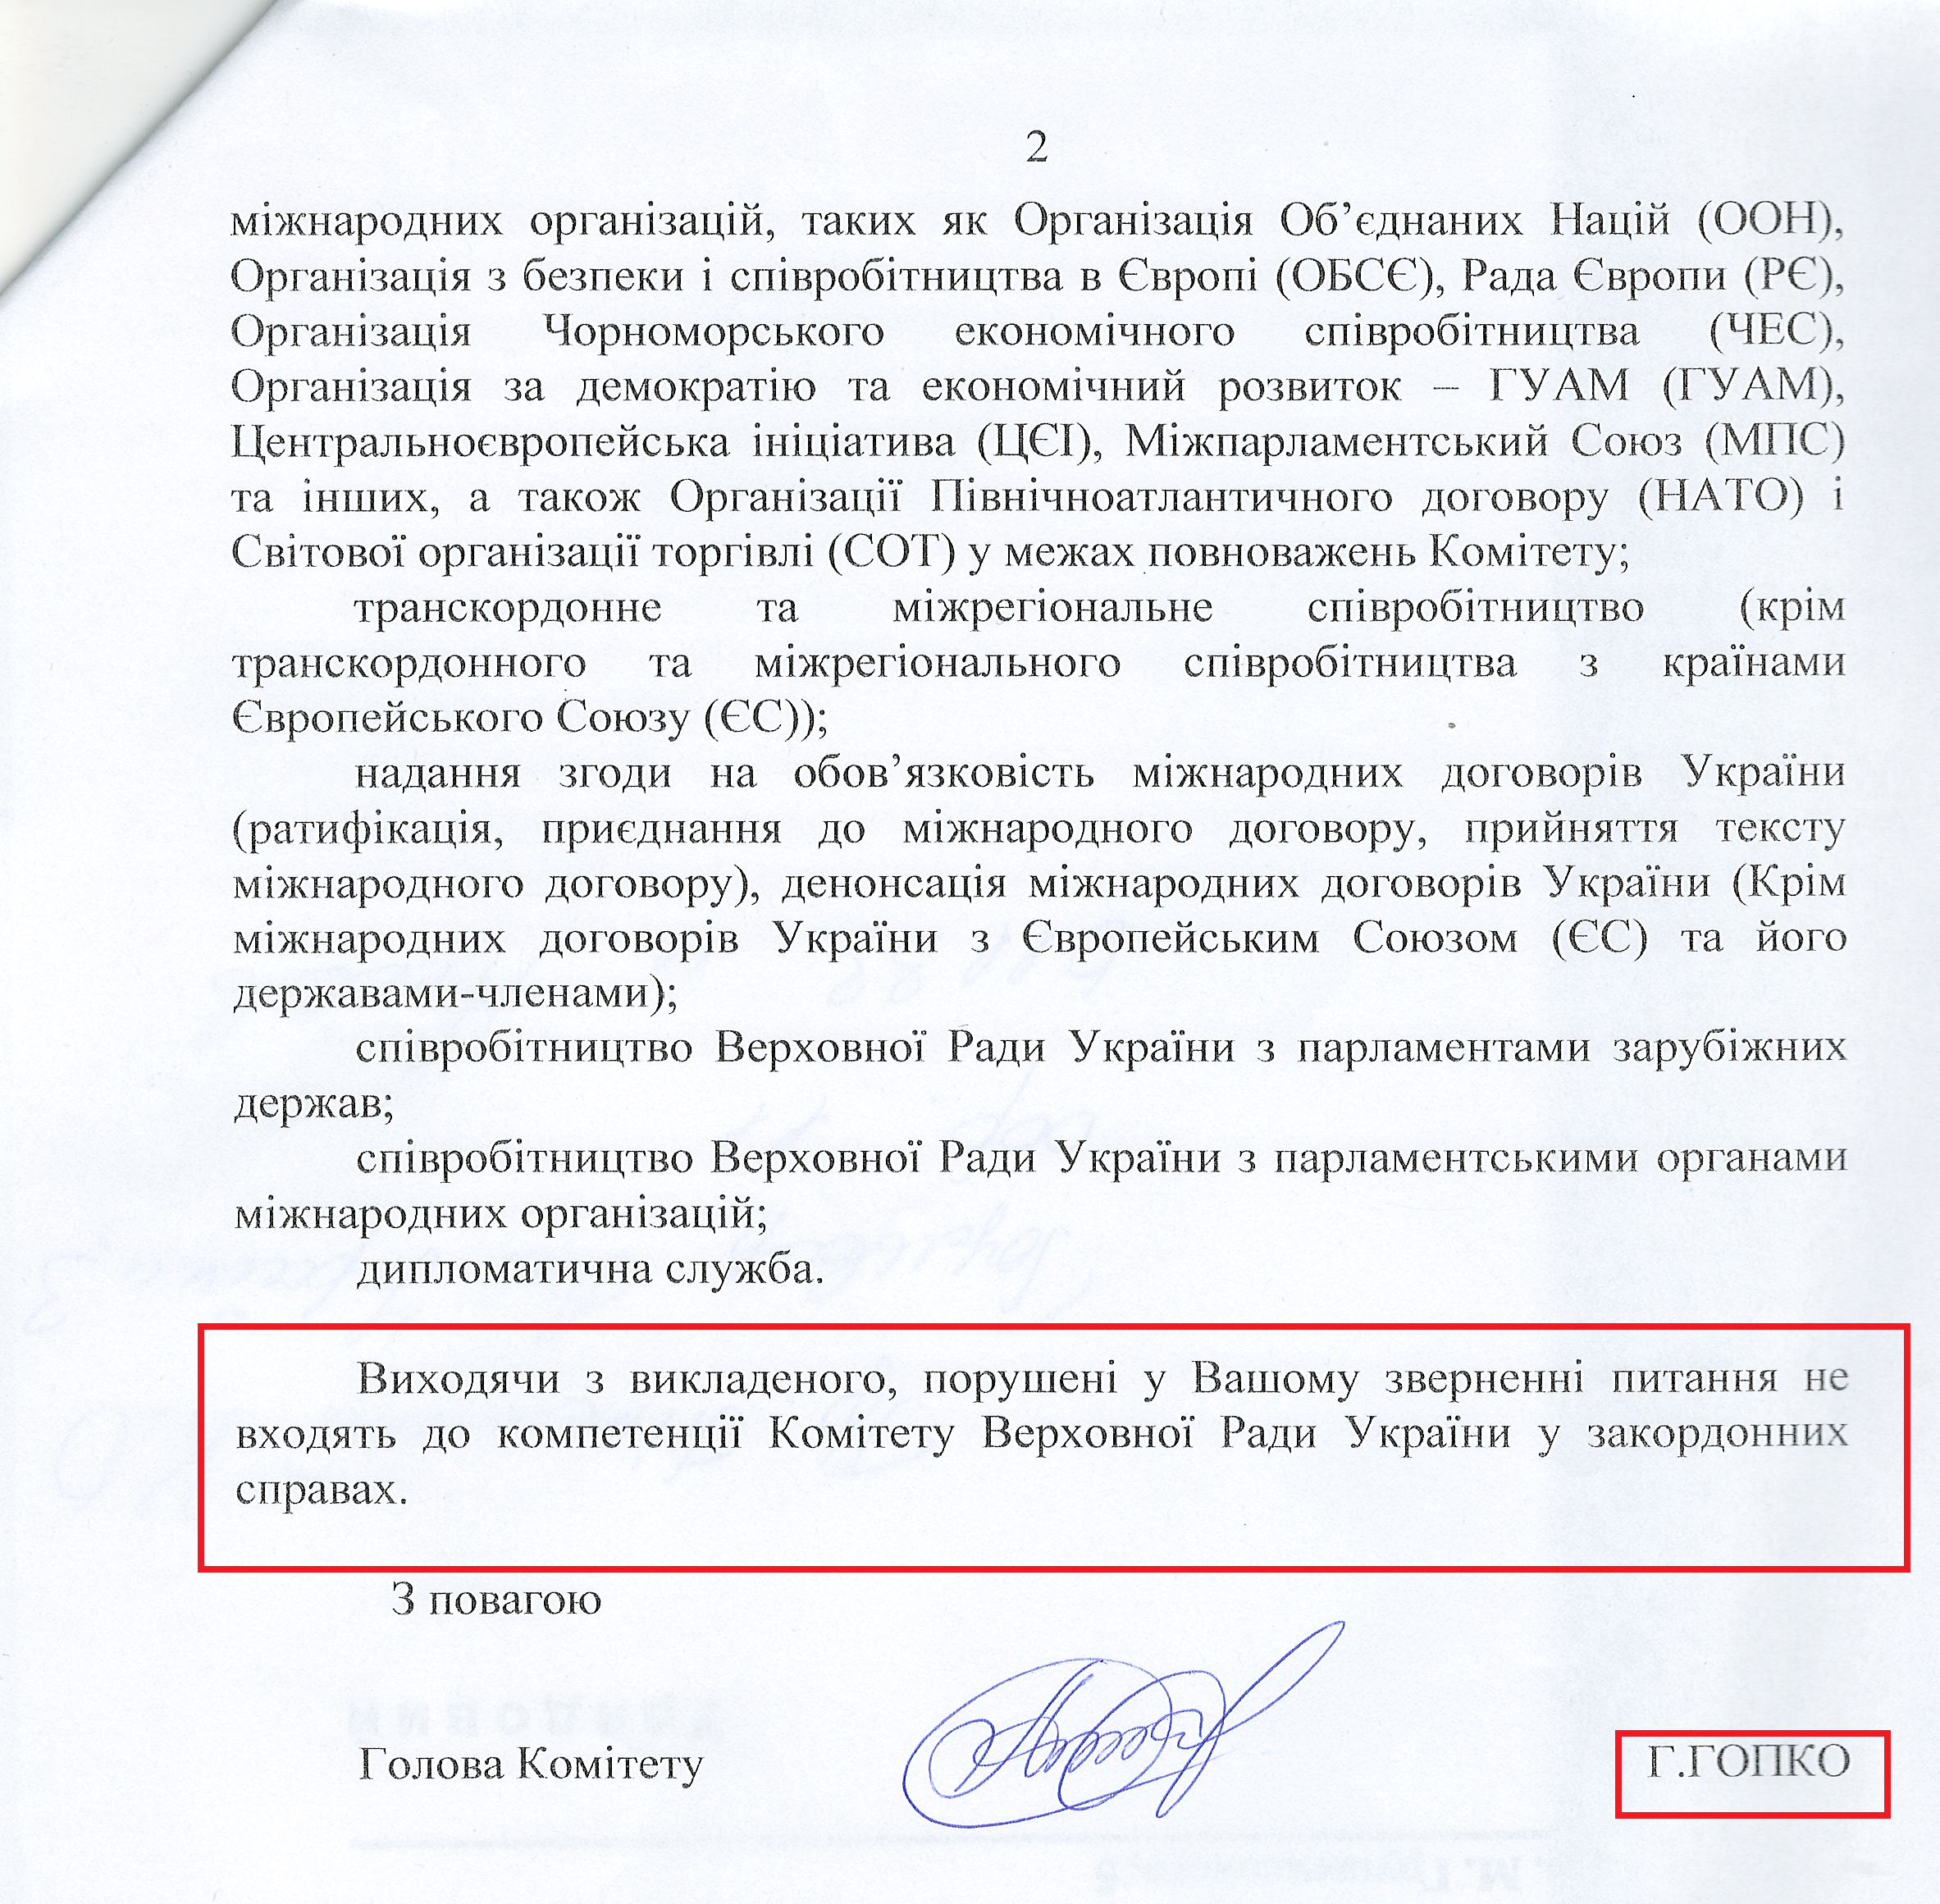 Лист народного депутата Ганни Гопко № 04-20/18 - 956 (224809) від 10 вересня 2015 року